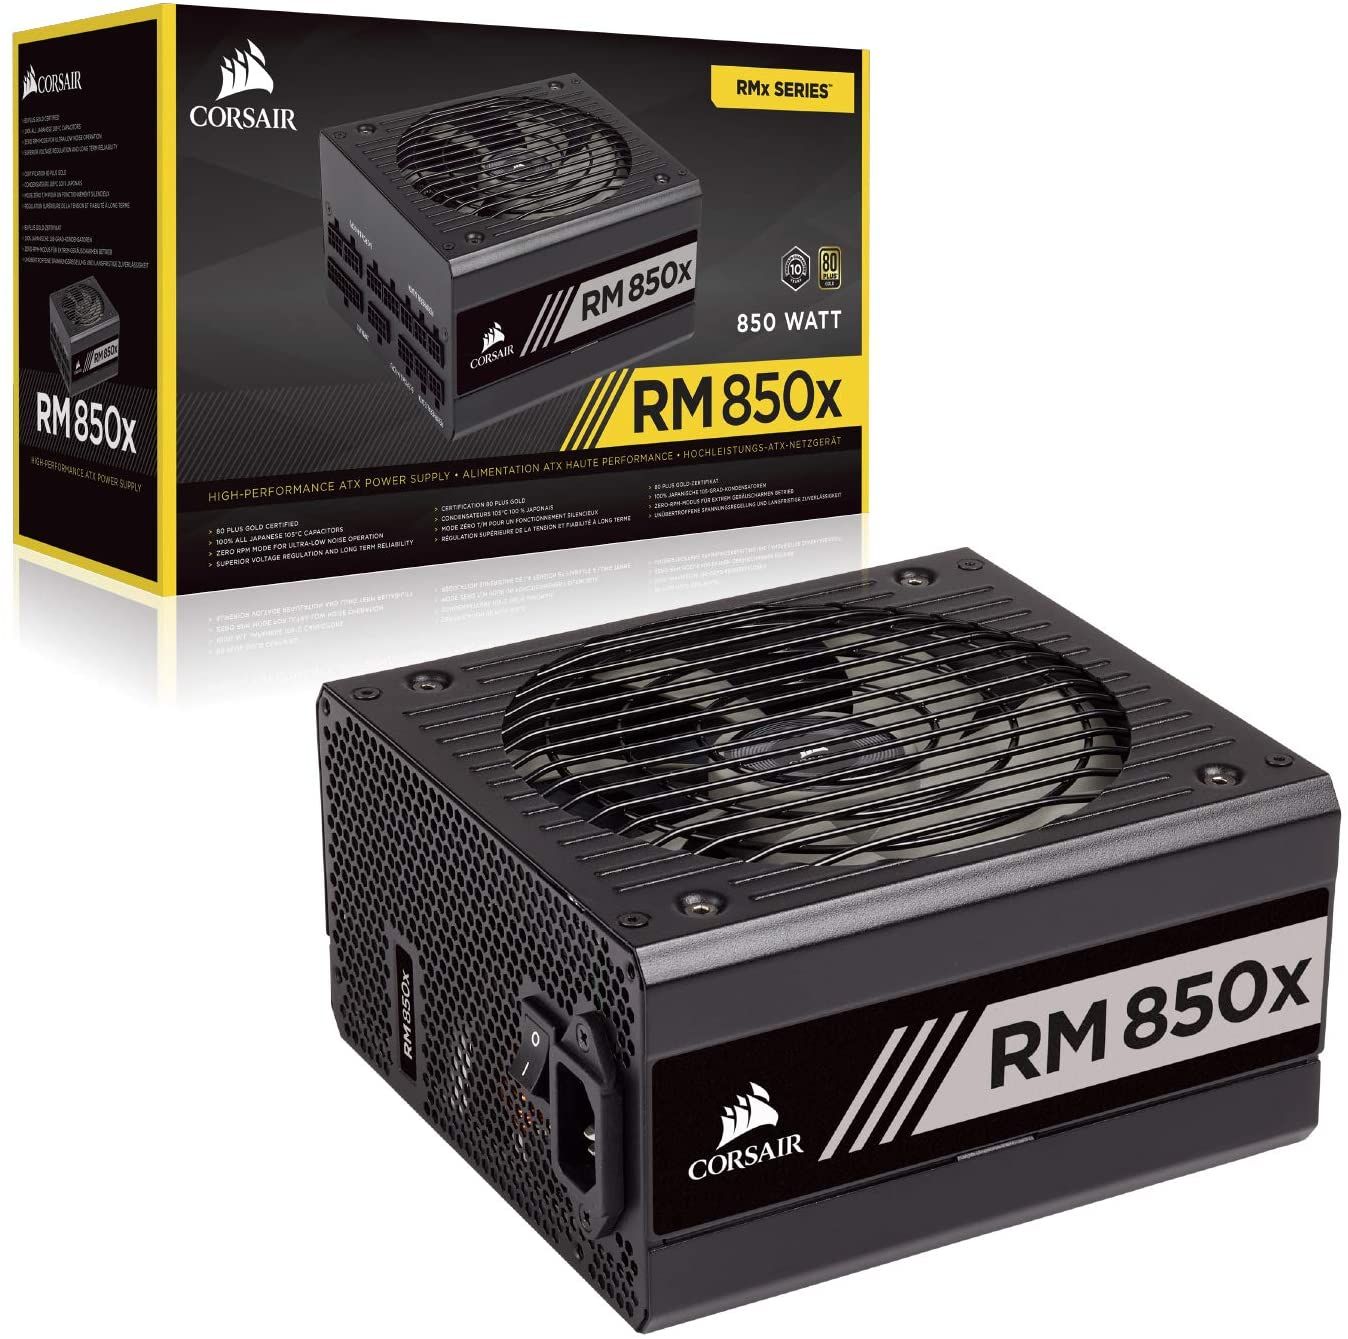 Corsair RM850x box